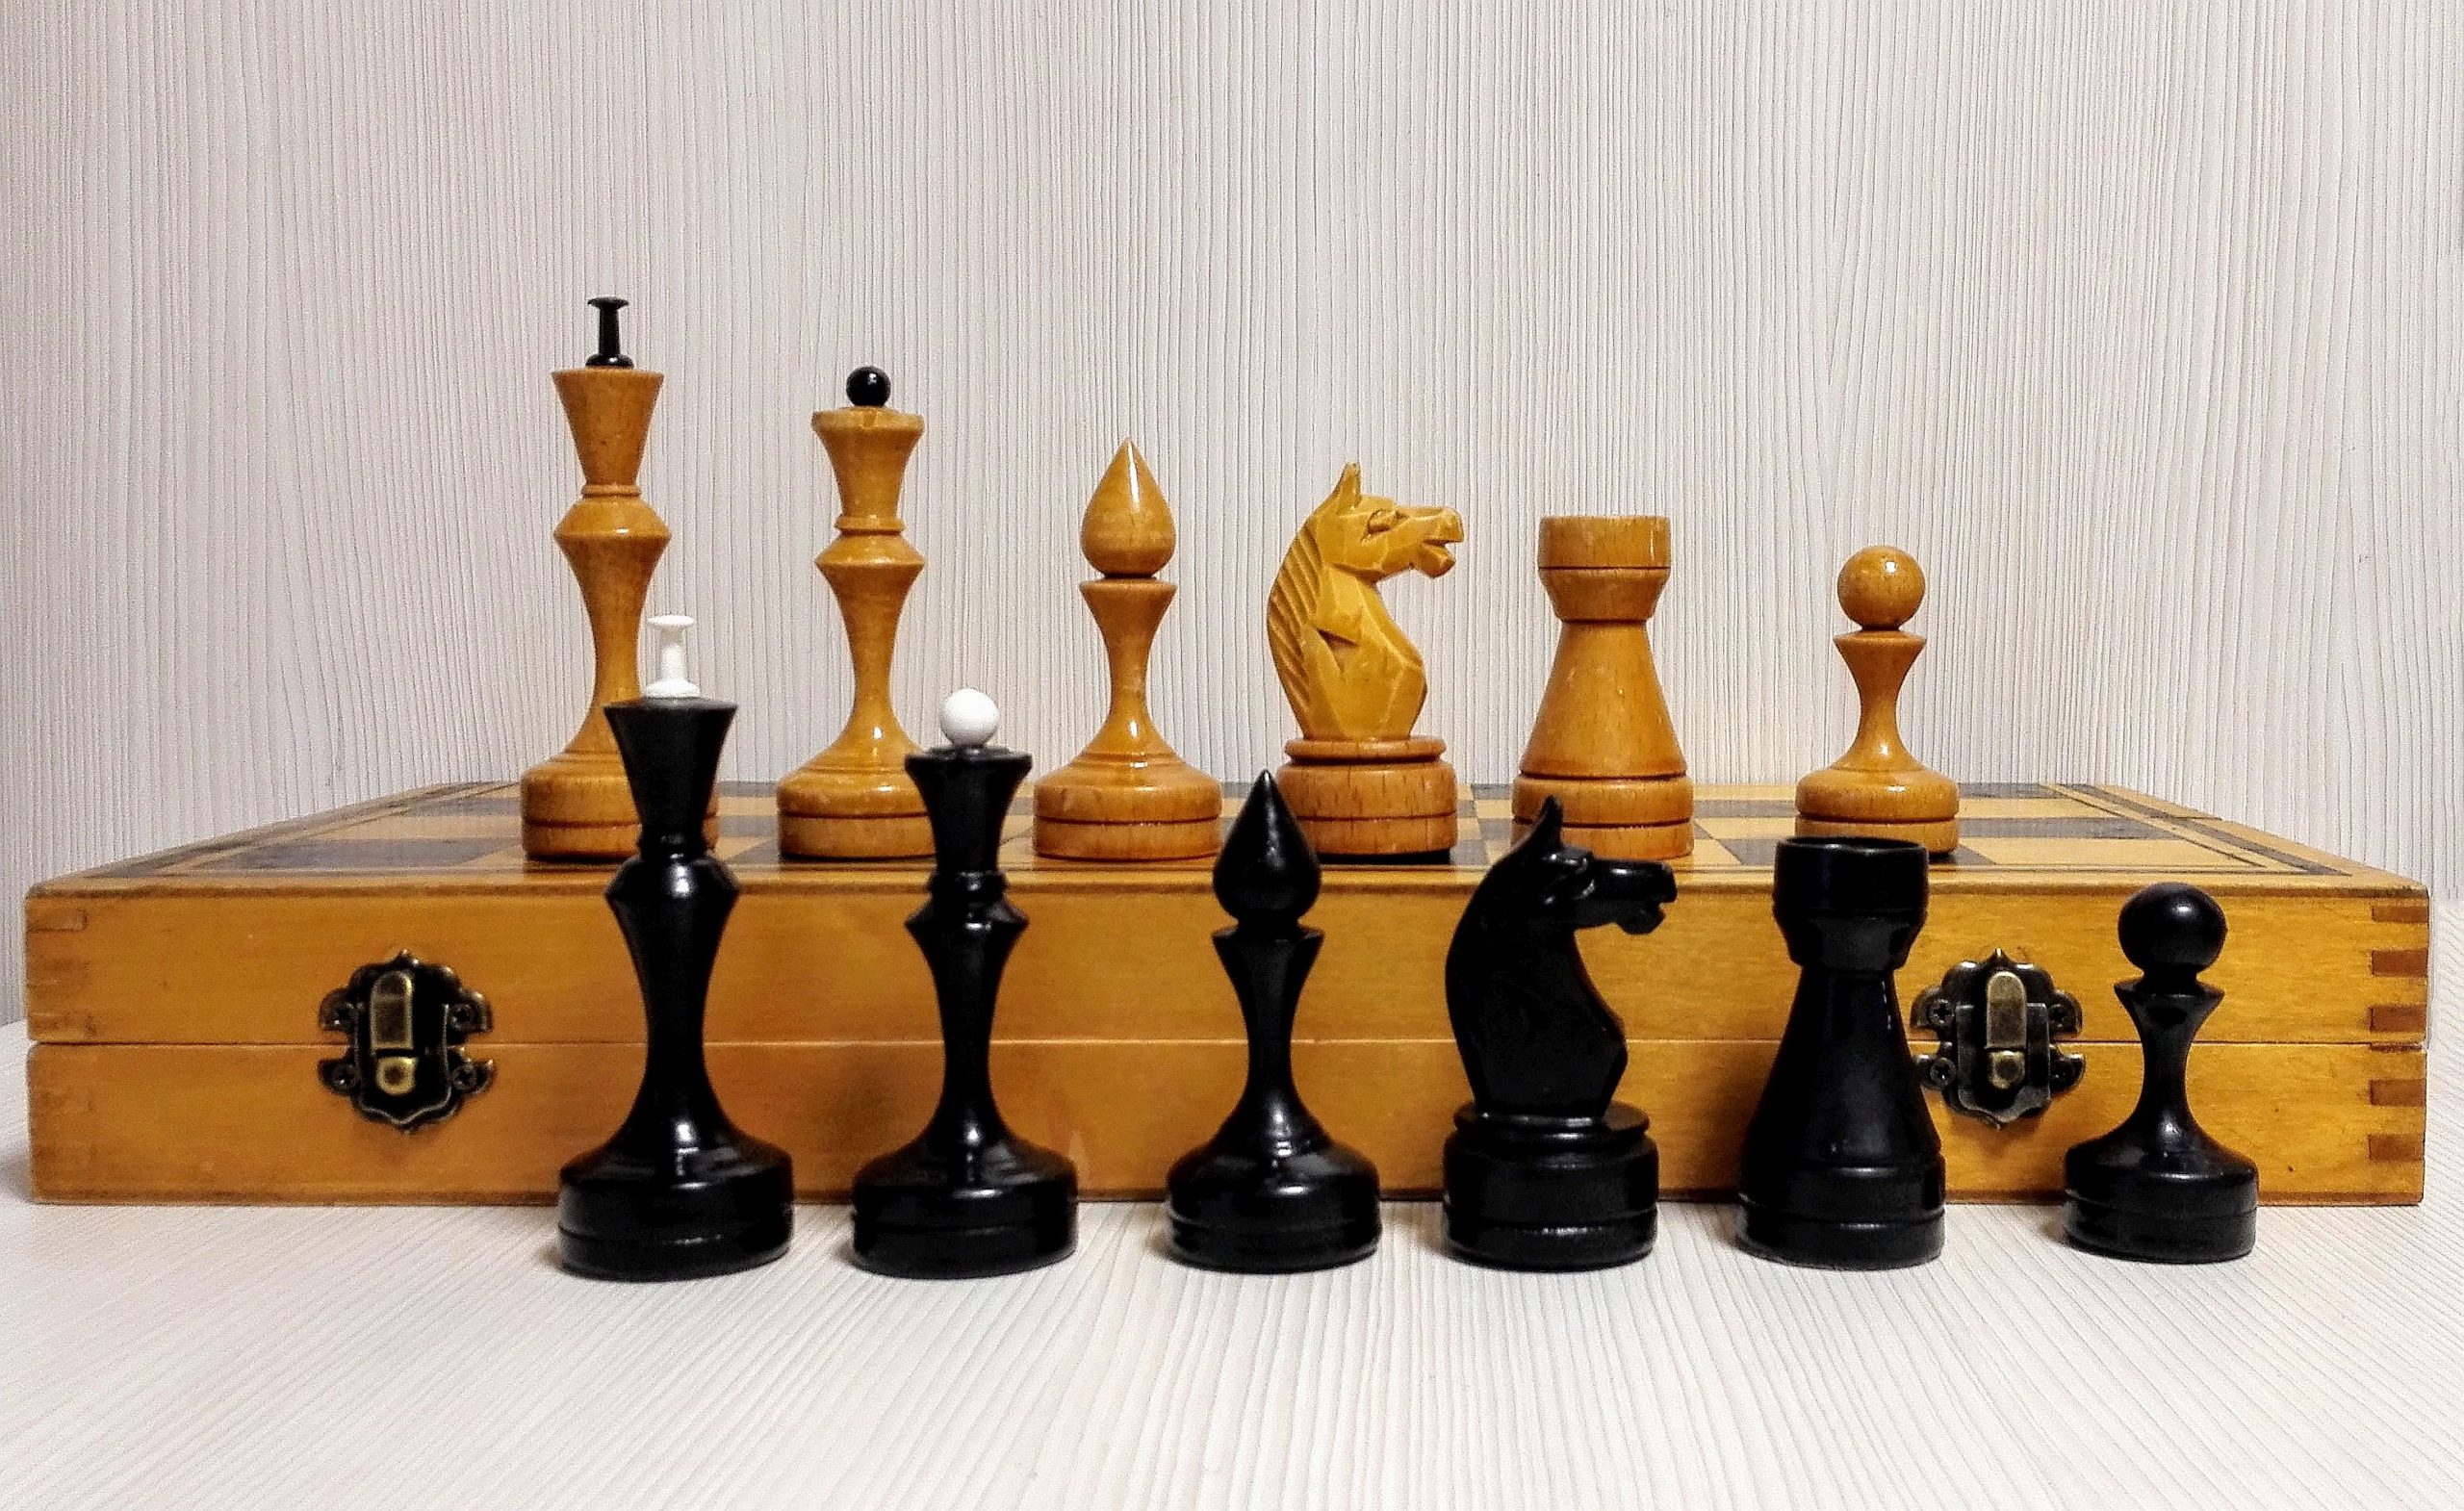 Chess24 Português 